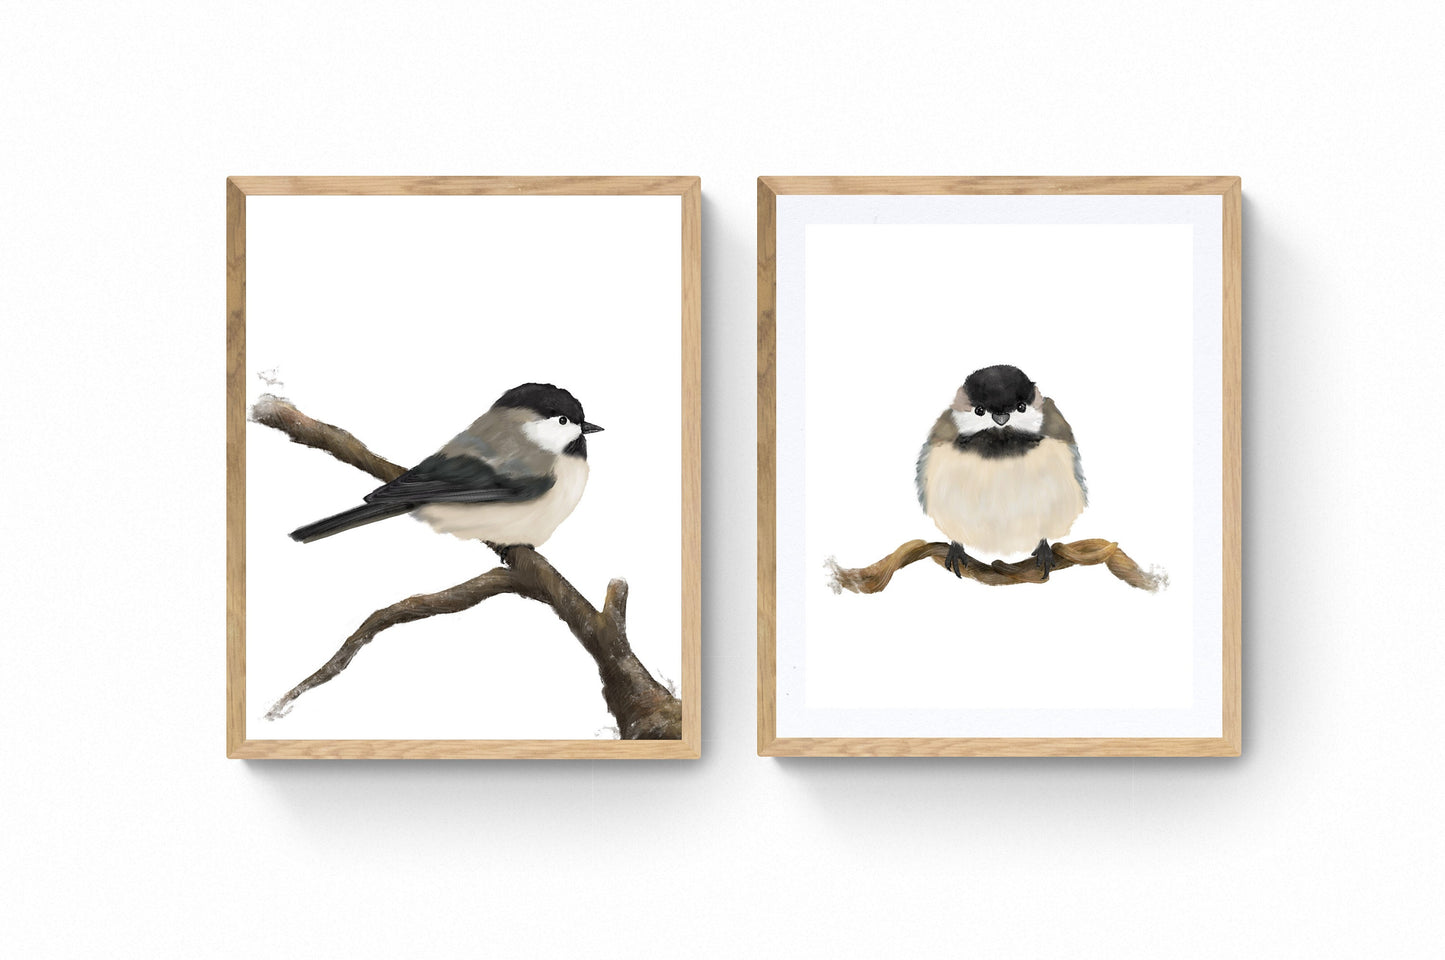 Set of 2 Chickadee Print, Bird Painting, Small Bird Art, Backyard Birds, Bird on Branch, Living Room Wall Art, Bird Watcher Gift, Home Decor